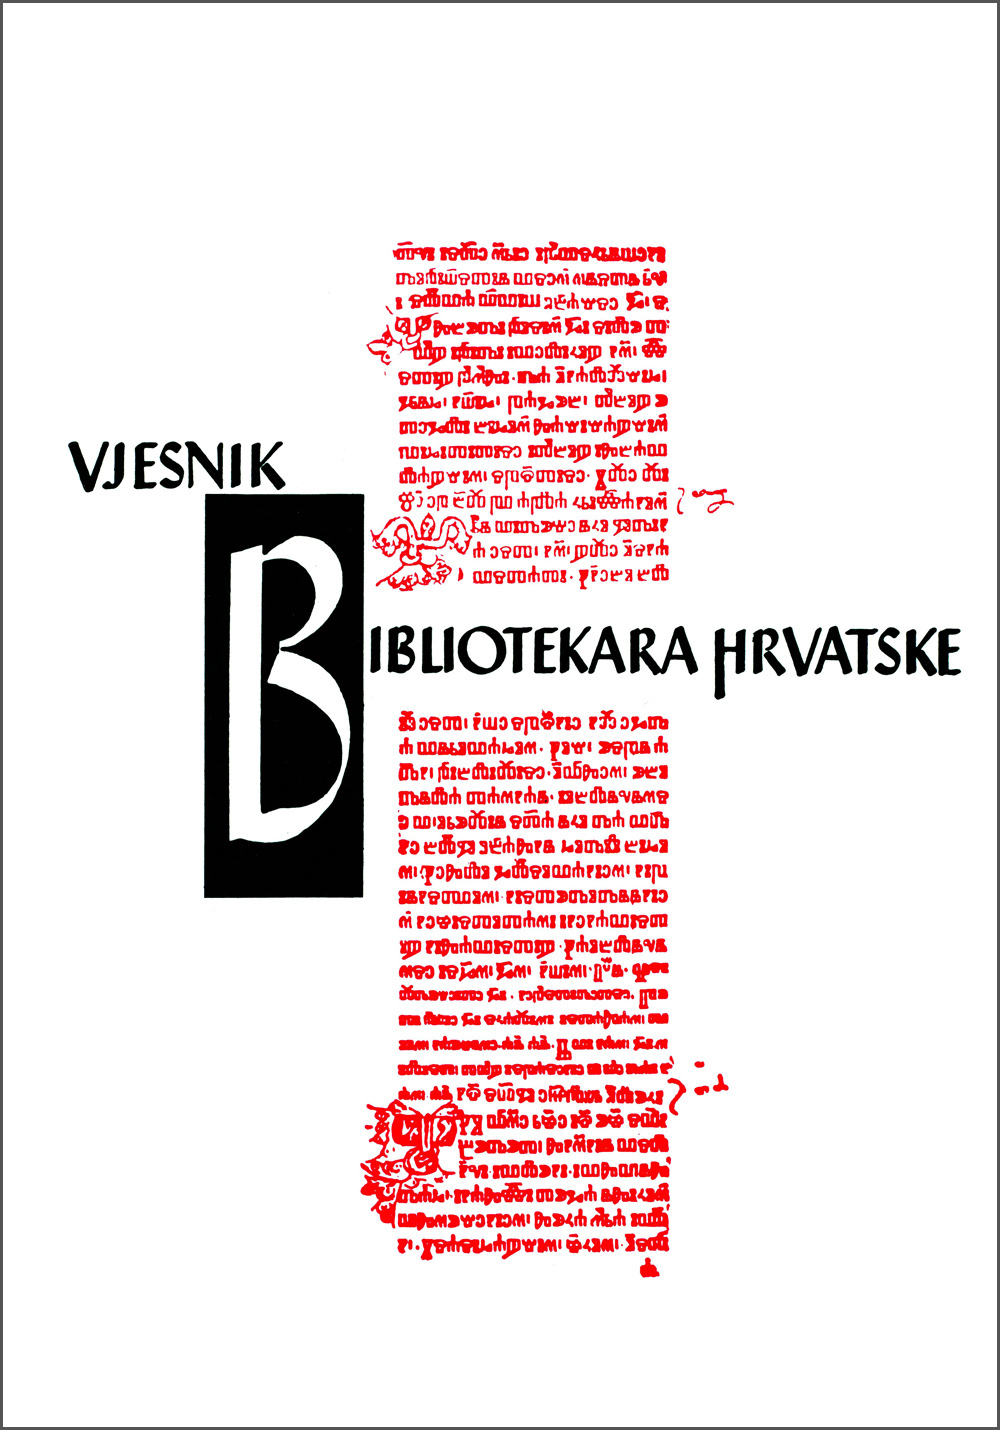 Vjesnik bibliotekara Hrvatske